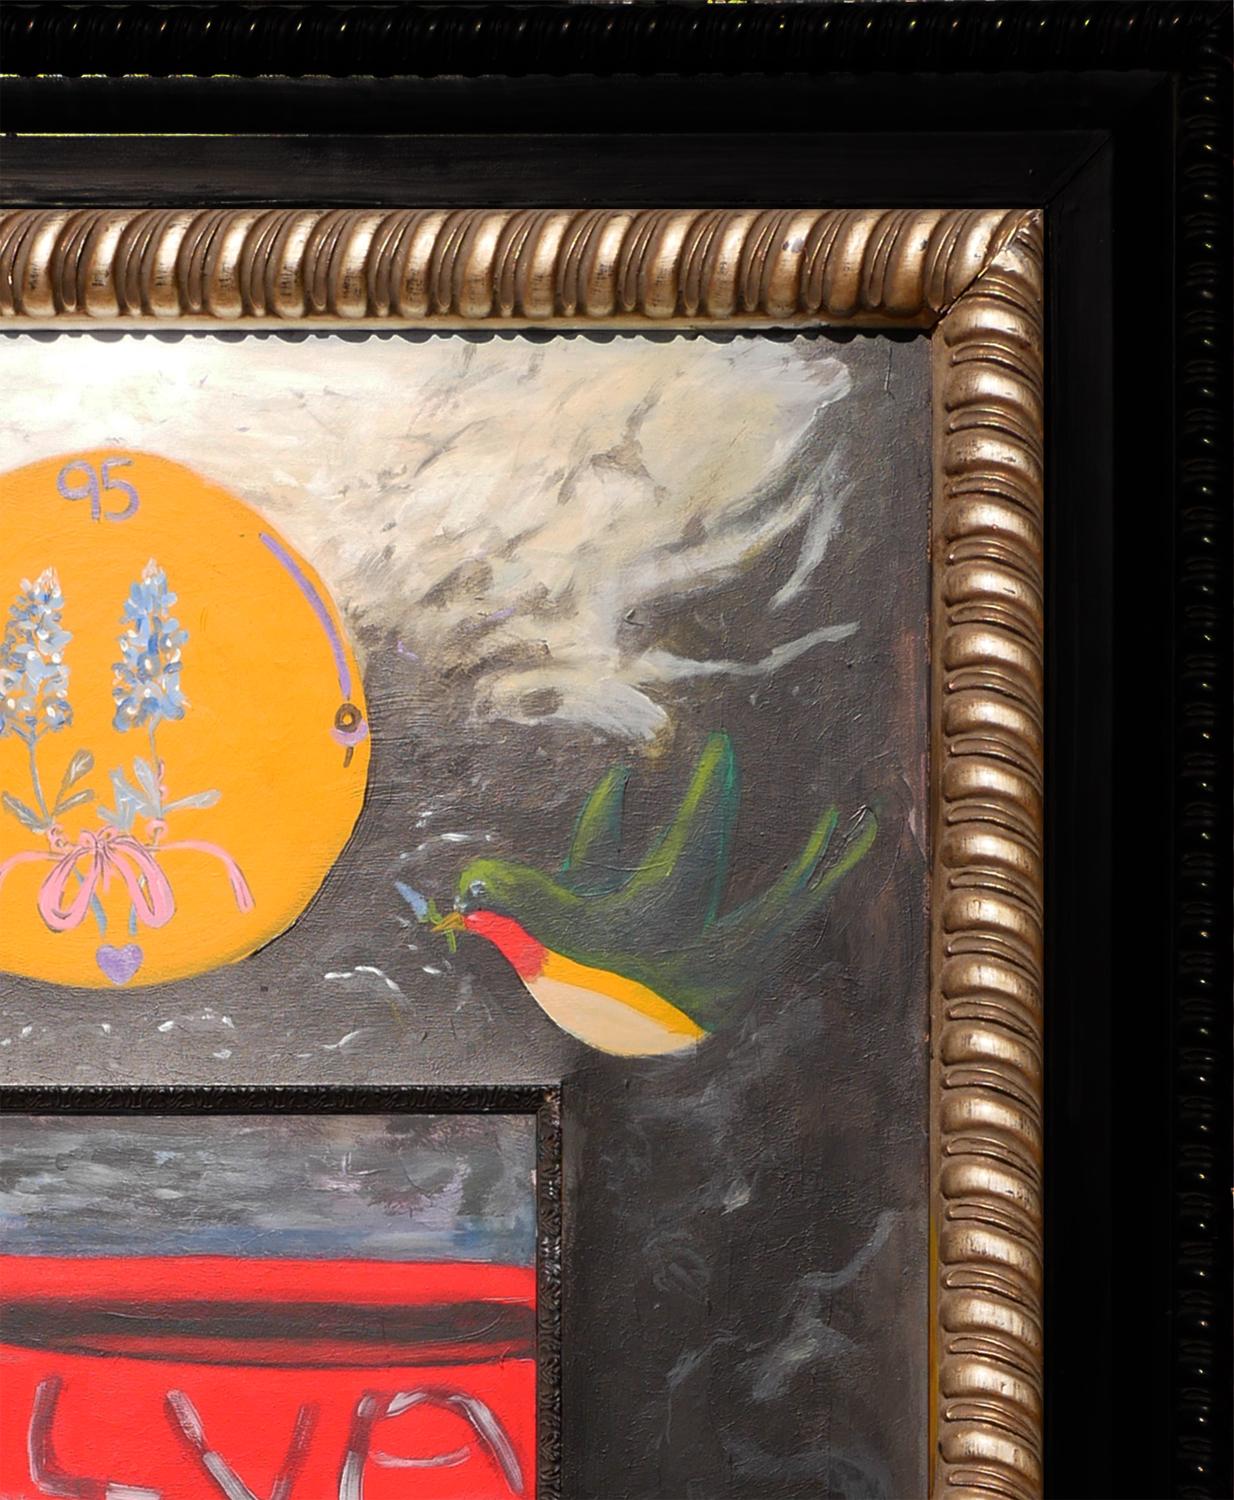 Buntes abstraktes zeitgenössisches surrealistisches Gemälde des Künstlers Moisés Villafuerte aus Houston, TX. Das Gemälde zeigt eine stürmische See mit zwei Vögeln und einem gerahmten Bild eines roten Rettungsbootes innerhalb des größeren Gemäldes.